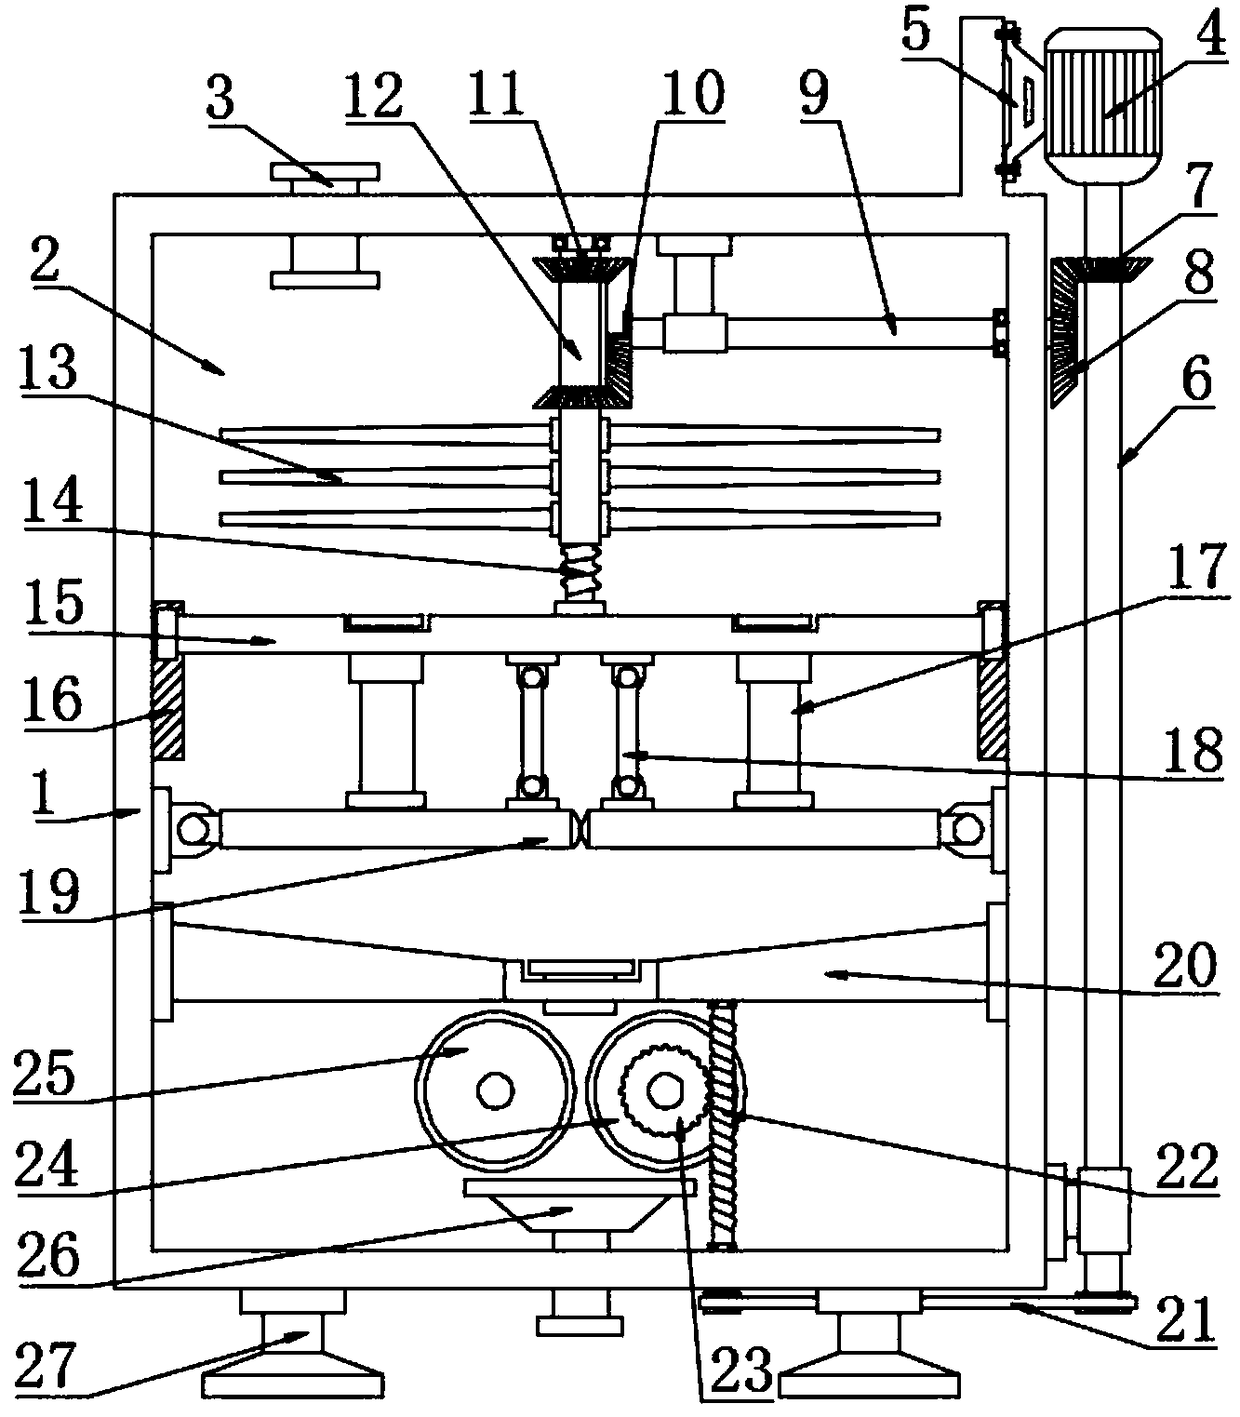 Symmetrical roller type fodder crushing machining device